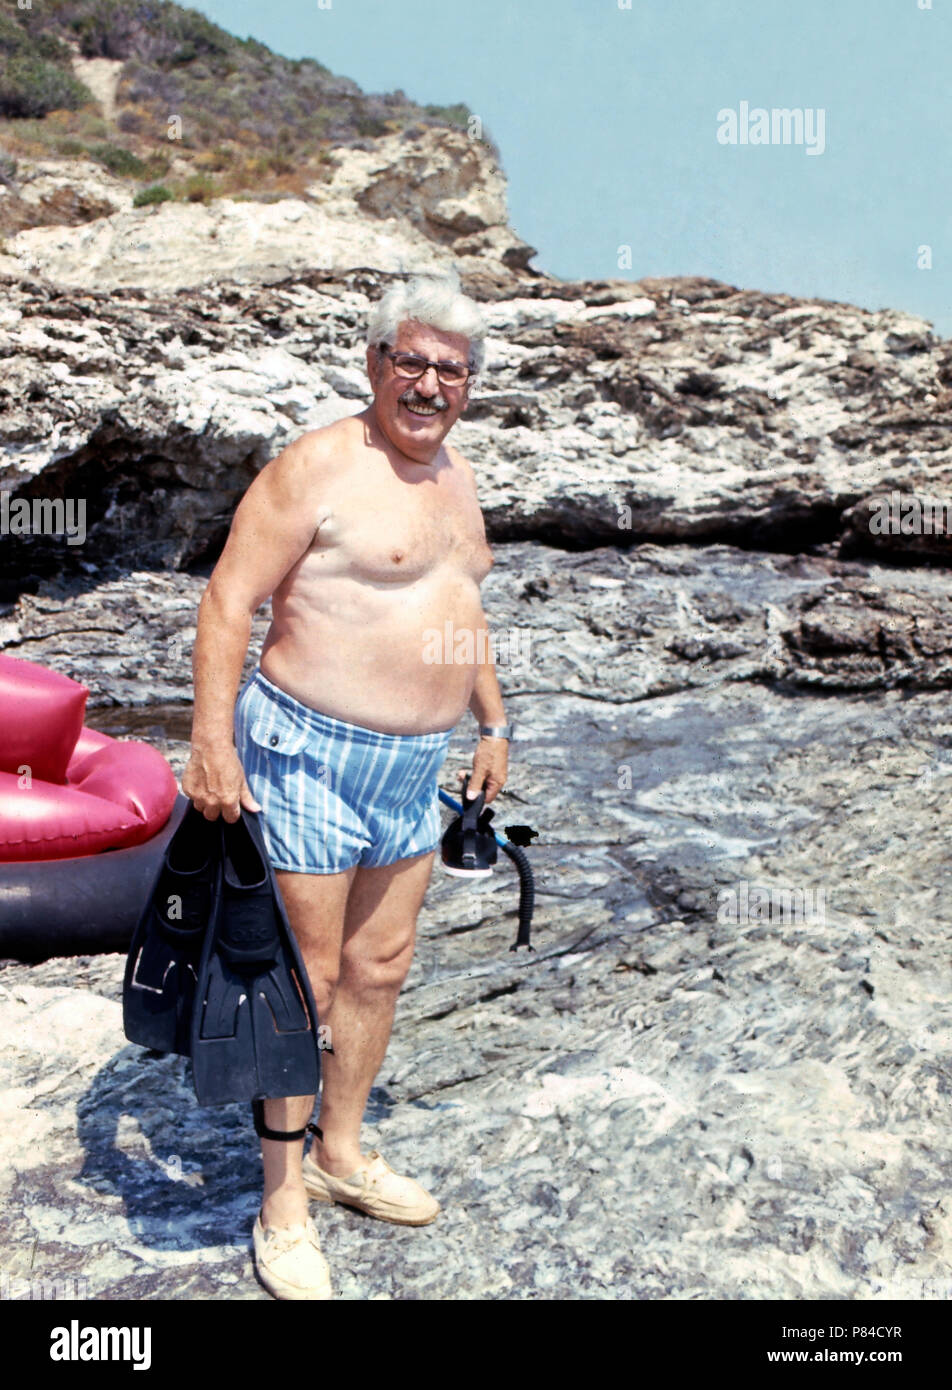 Willy Millowitsch im Urlaub auf Elba, Italien 1974. Willy Millowitsch enjoying his summer vacation at Elba, Italy 1974. Stock Photo